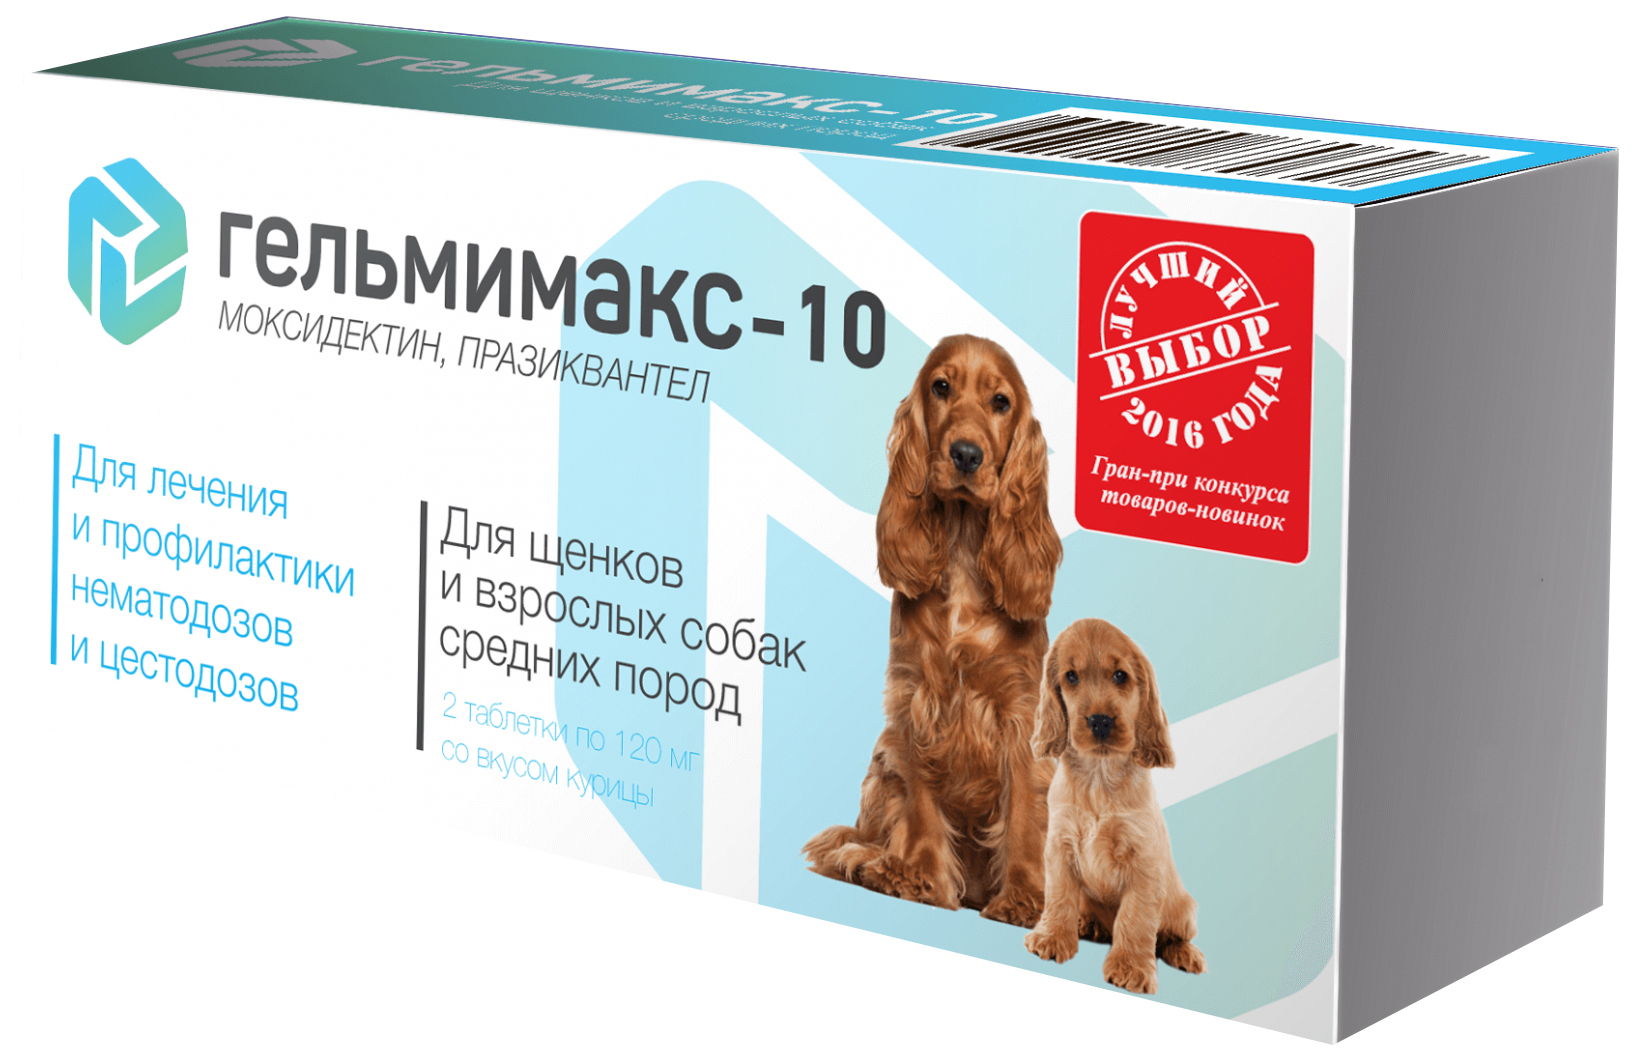 Антигельминтик Гельмимакс-10 APICENNA для щенков и собак средних пород,  2таб 120 мг